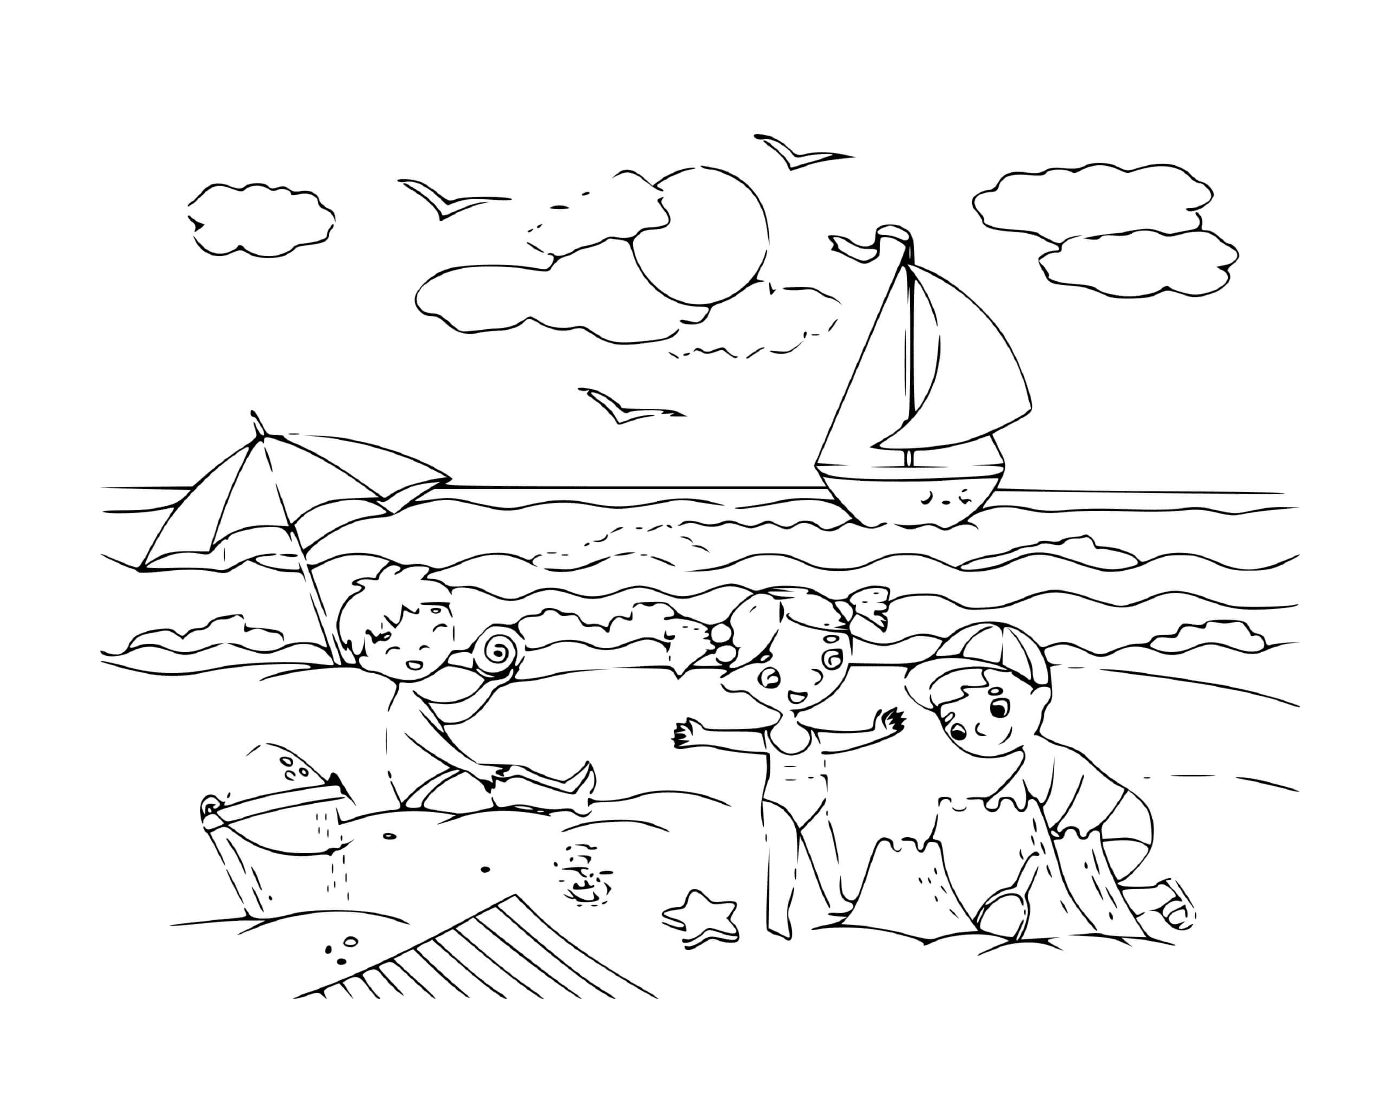 enfants sur une plage en bord de mer